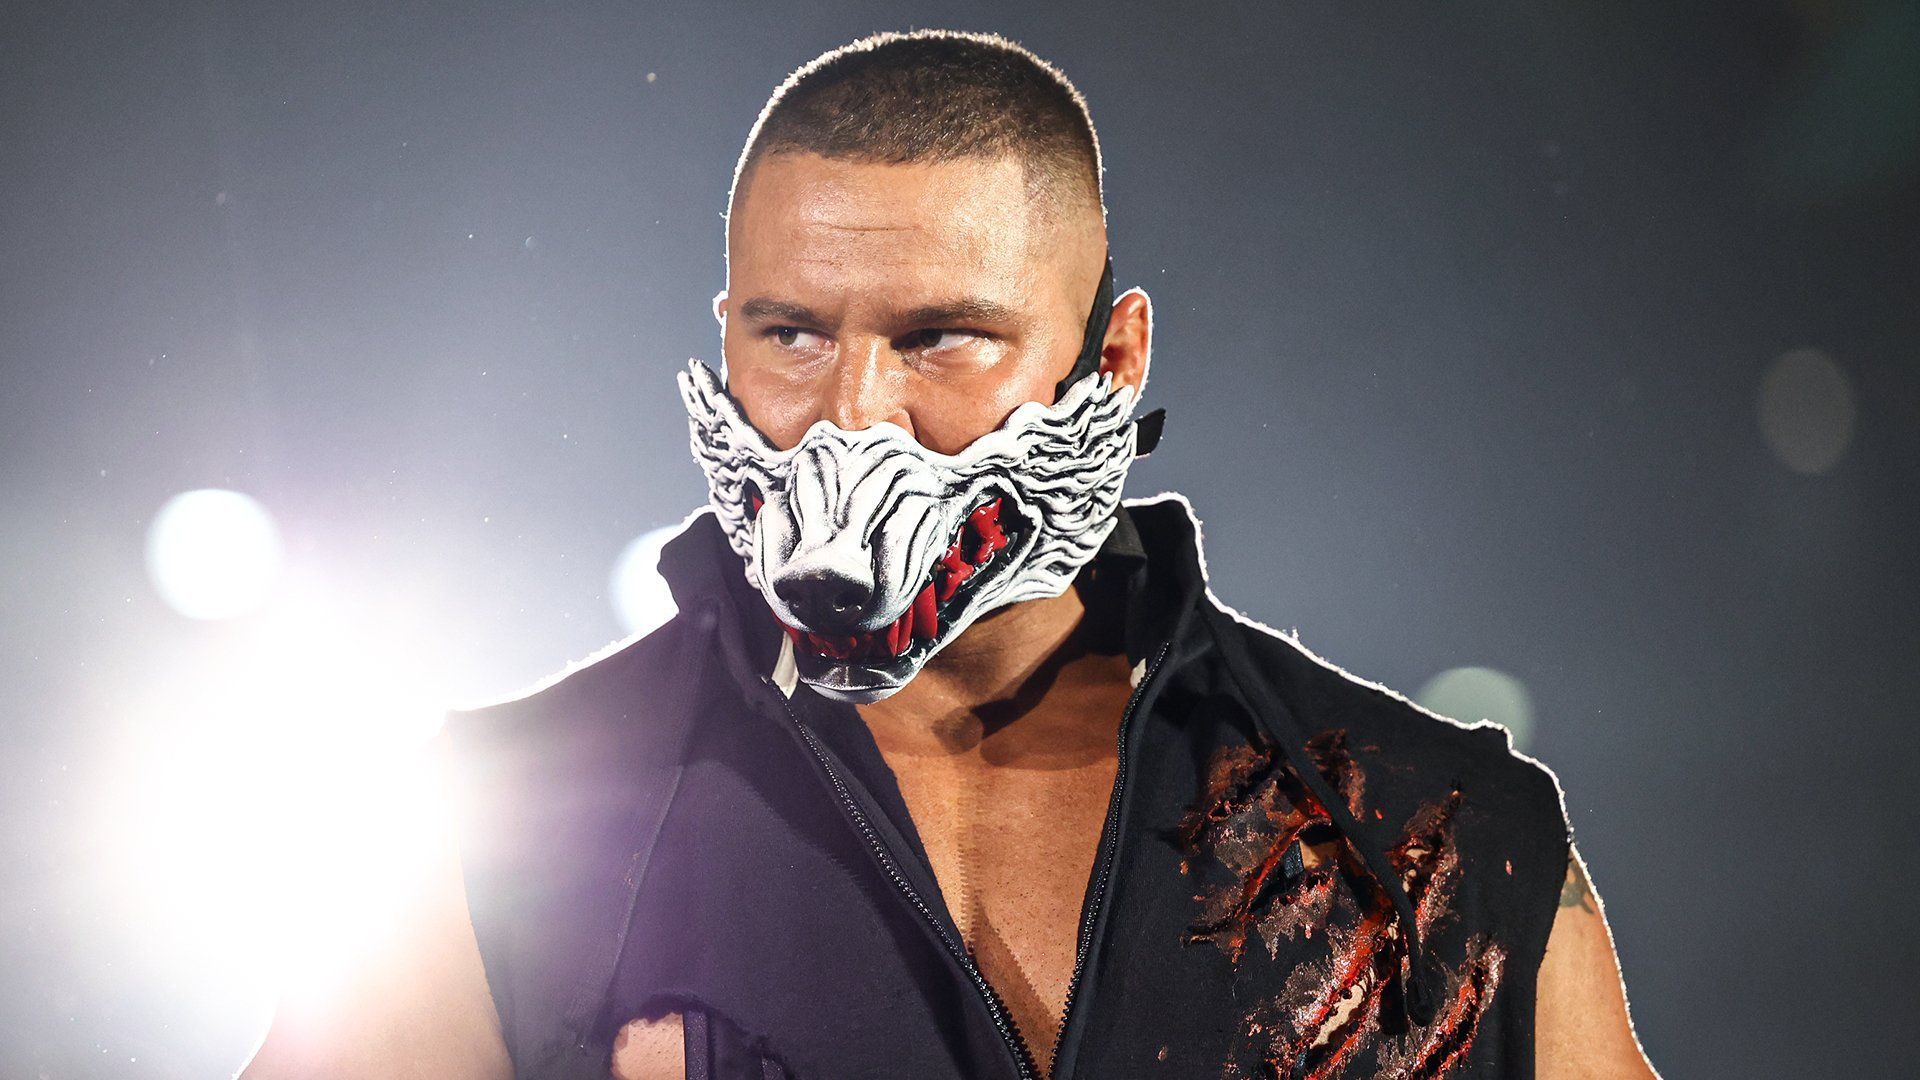 Bron Breakker is a former NXT Champion.